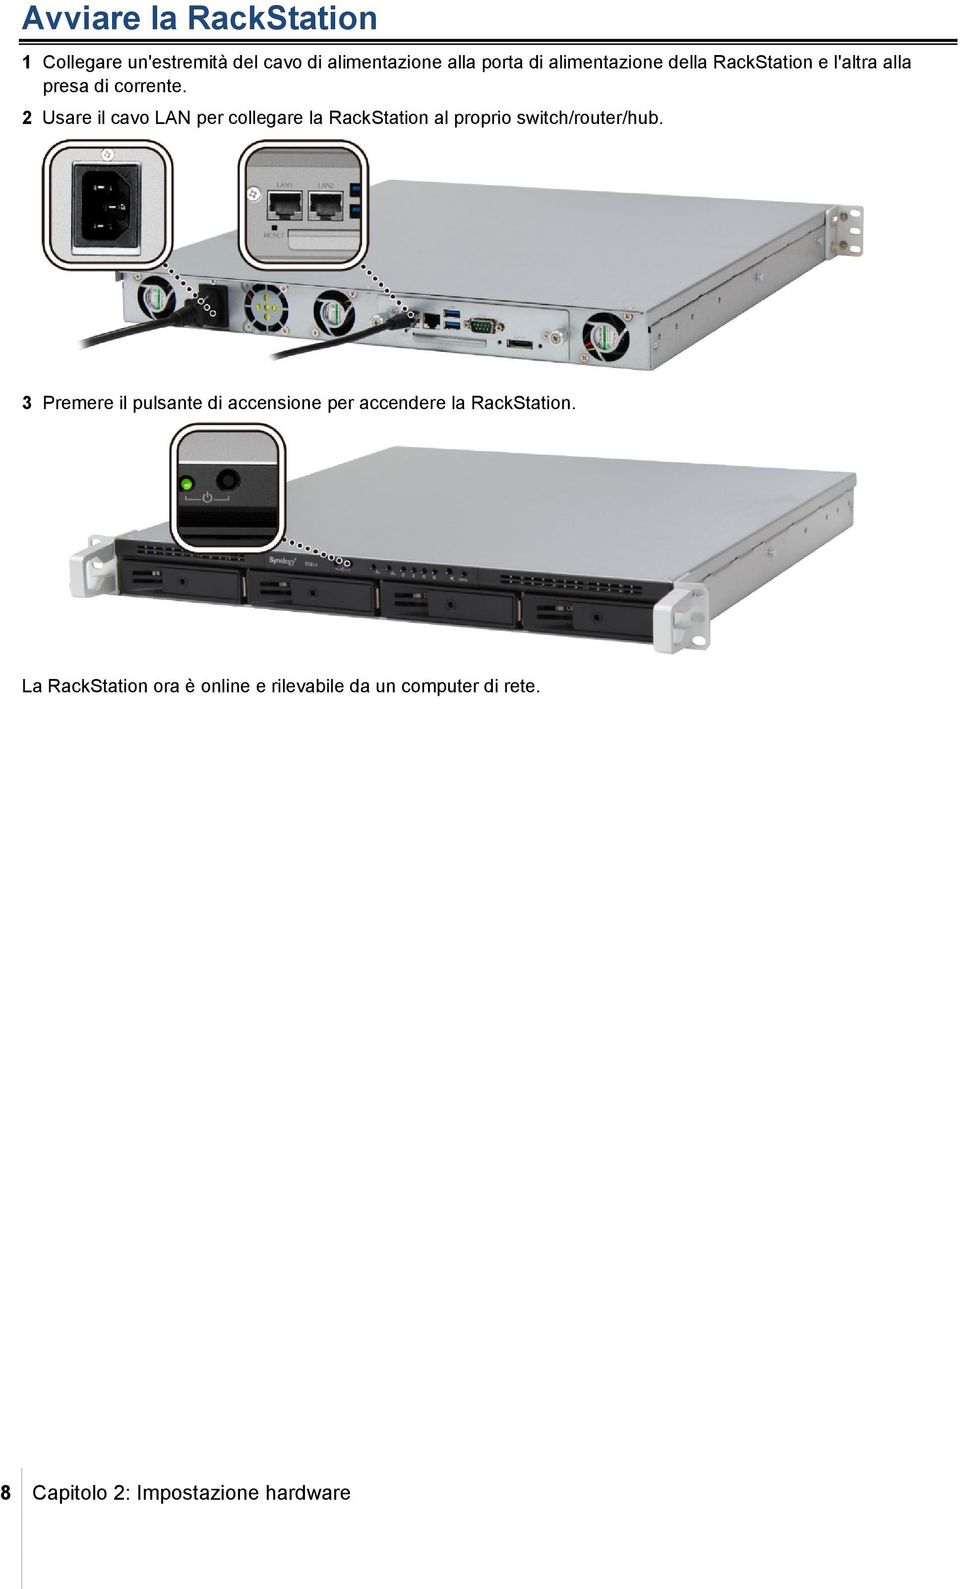 2 Usare il cavo LAN per collegare la RackStation al proprio switch/router/hub.